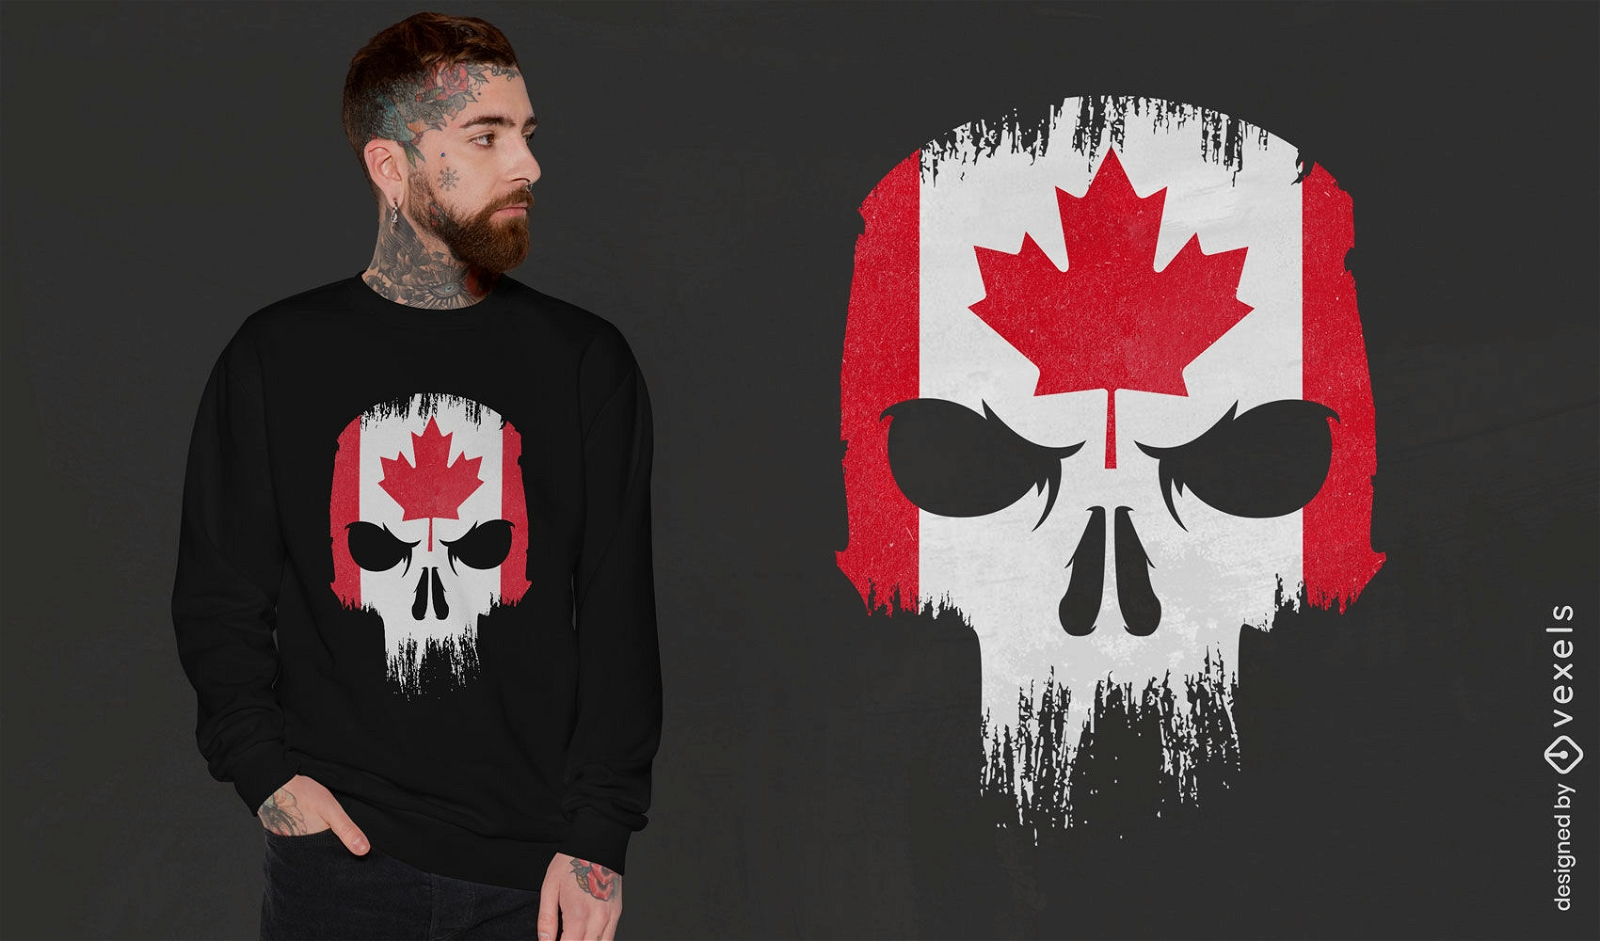 Diseño de camiseta de calavera canadiense.